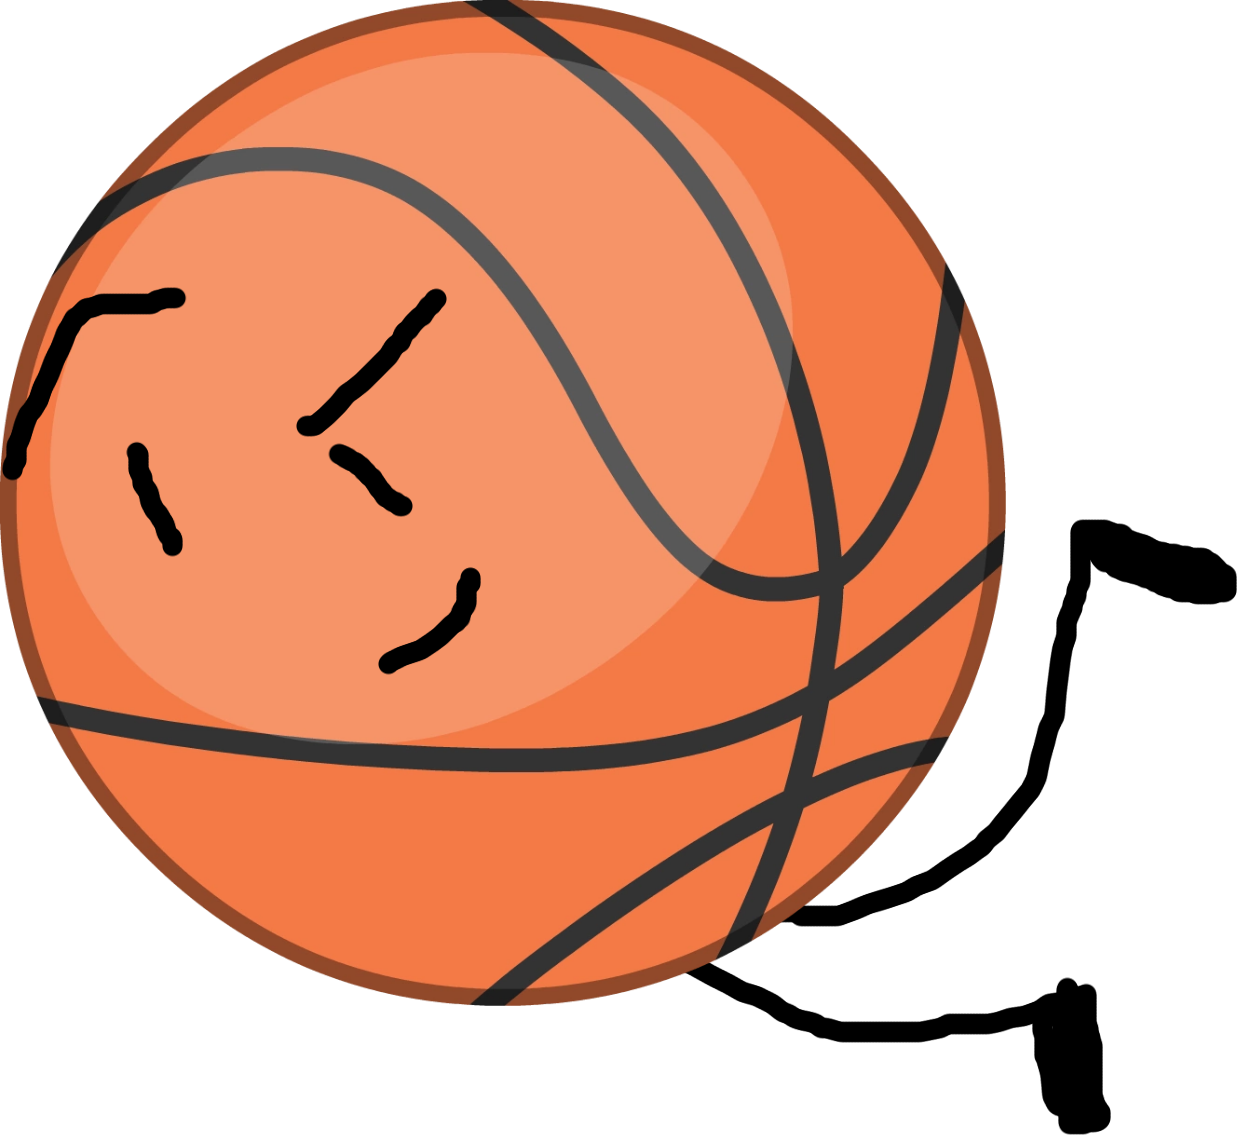 Basketball - Bfb Basketball Intro Pose (1237x1135)